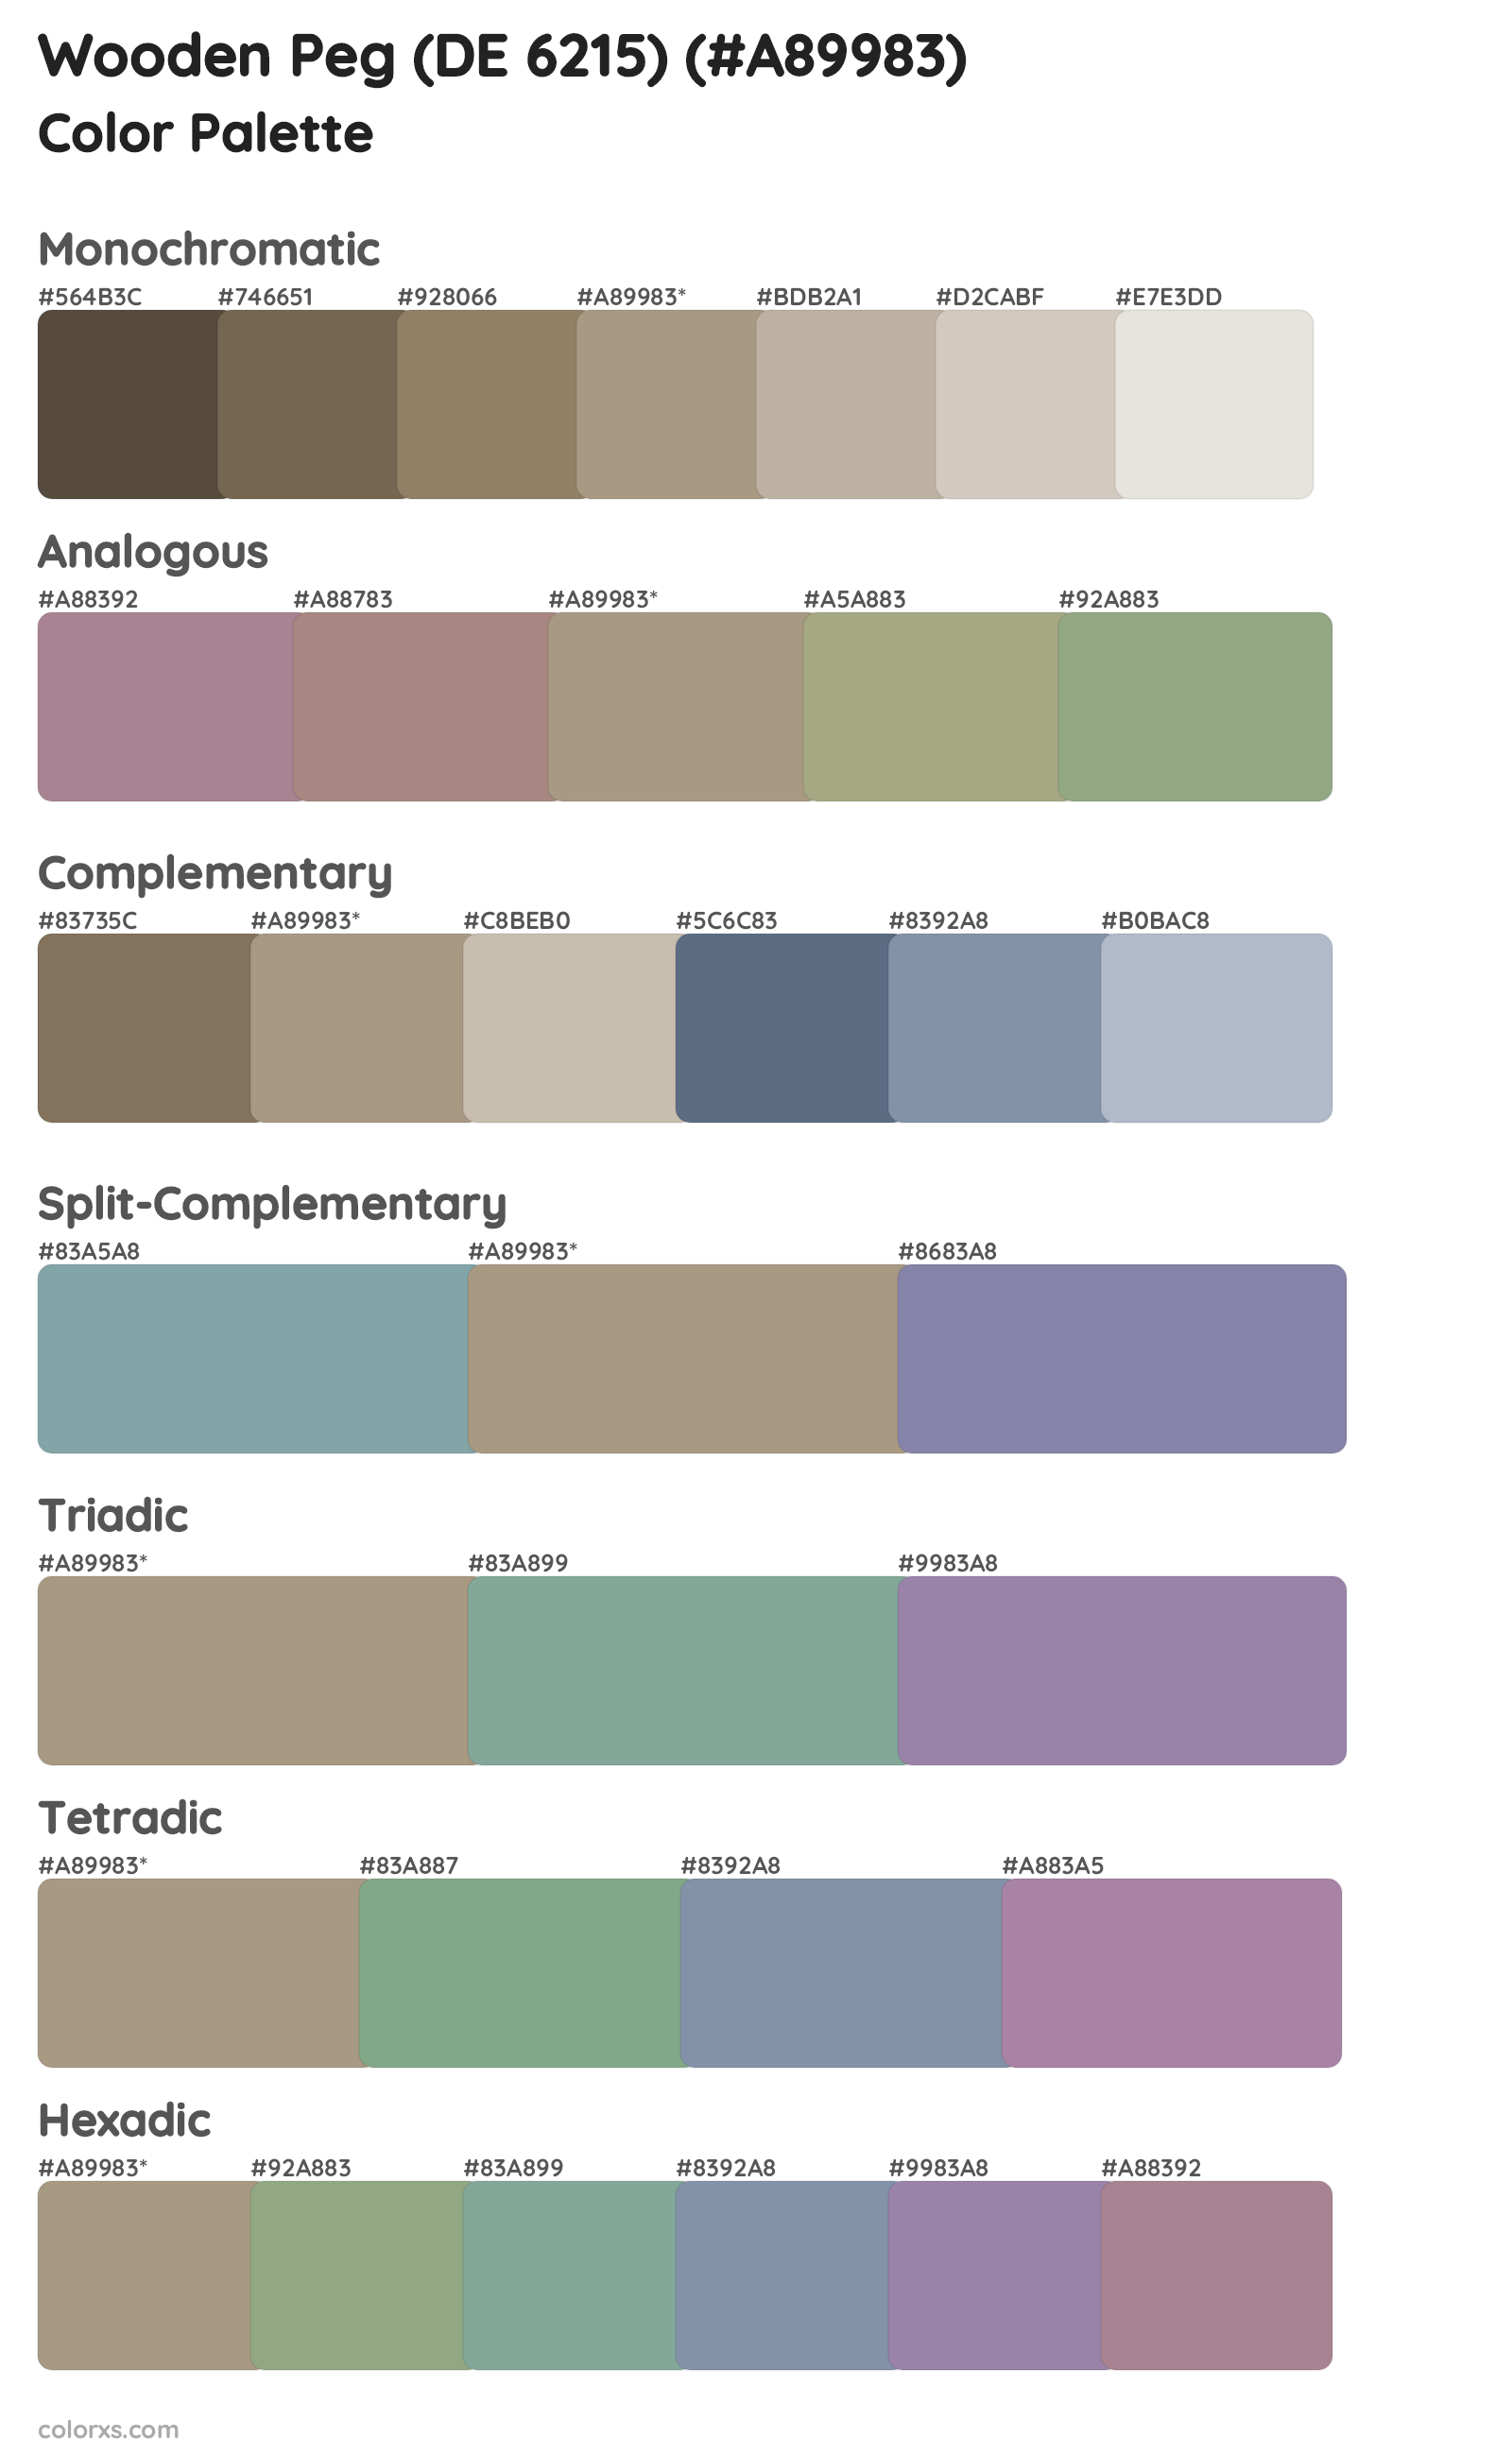 Wooden Peg (DE 6215) Color Scheme Palettes